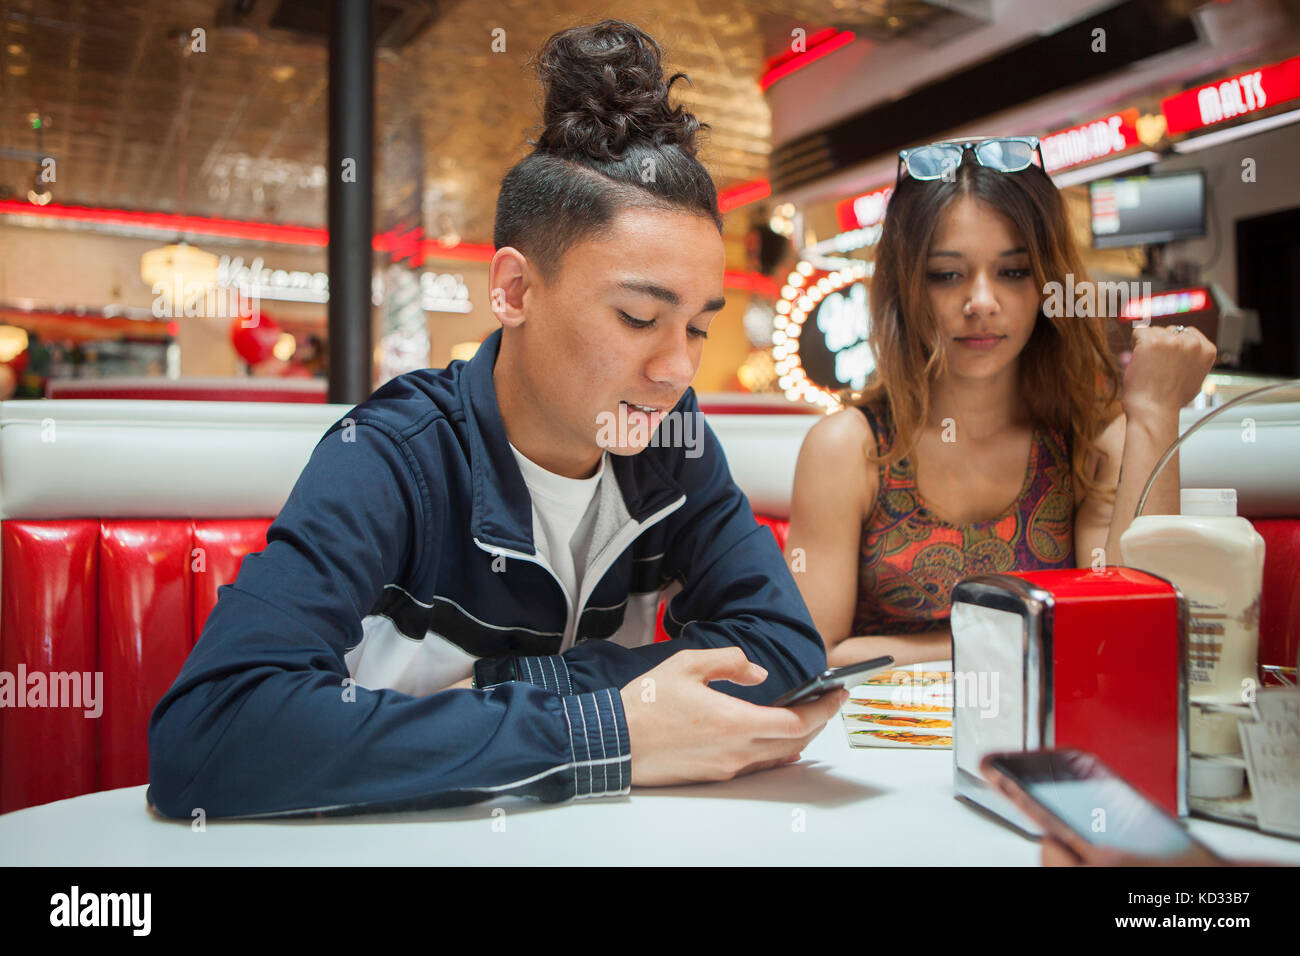 Jeune couple, assis dans une guinguette, young man looking at smartphone, femme avec expression d'ennui Banque D'Images